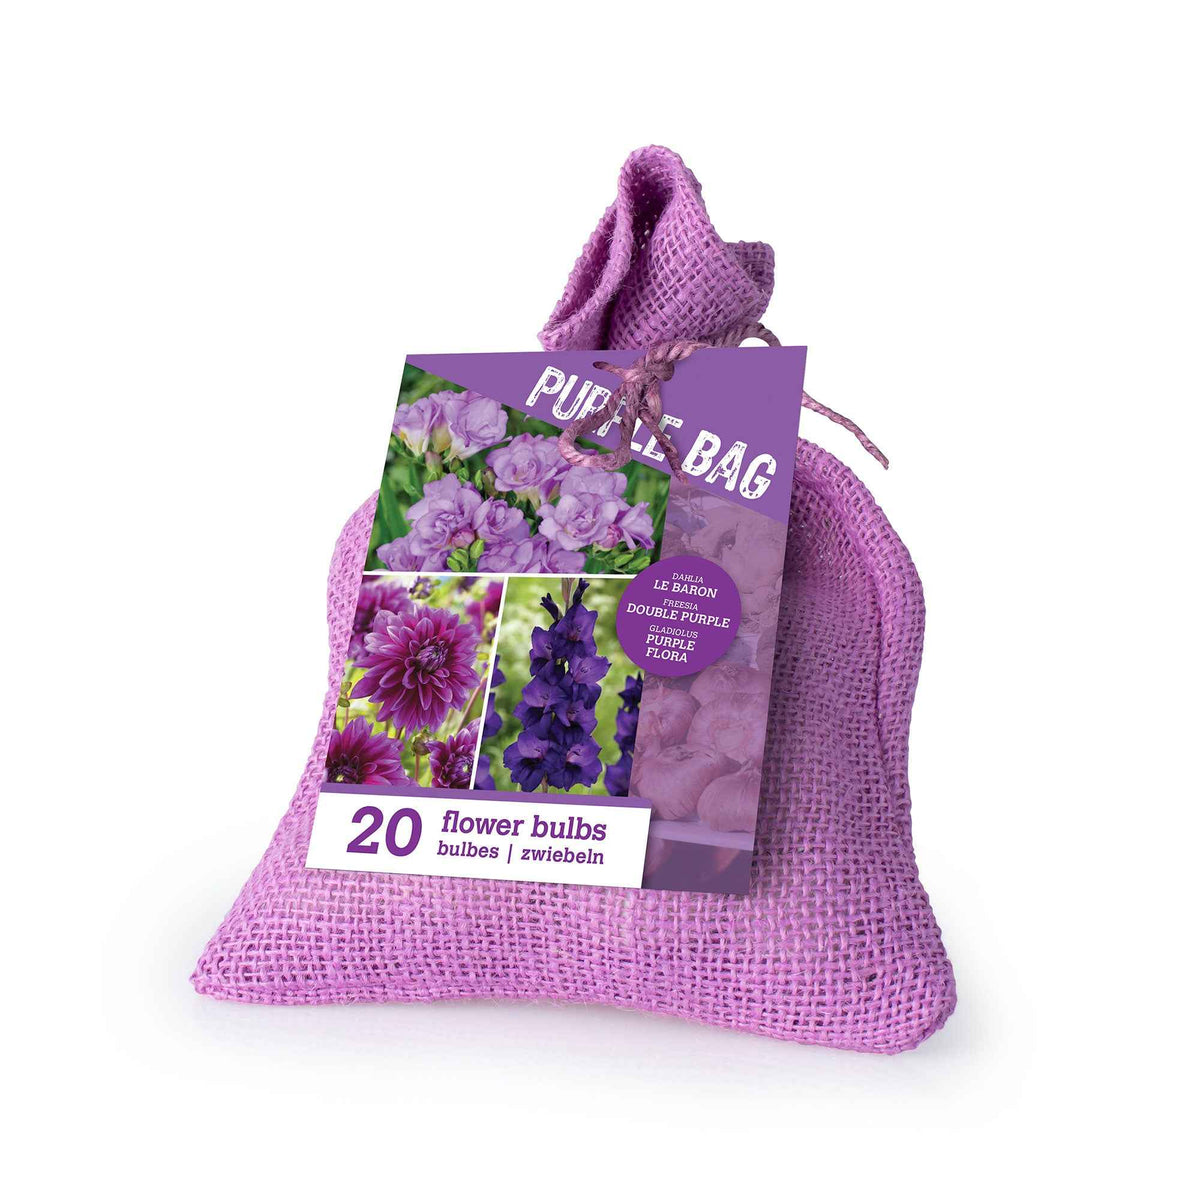 20 Bulbes de fleurs The Purple Bag en mélange - Dahlia, gladiolus, freesia - Plantes